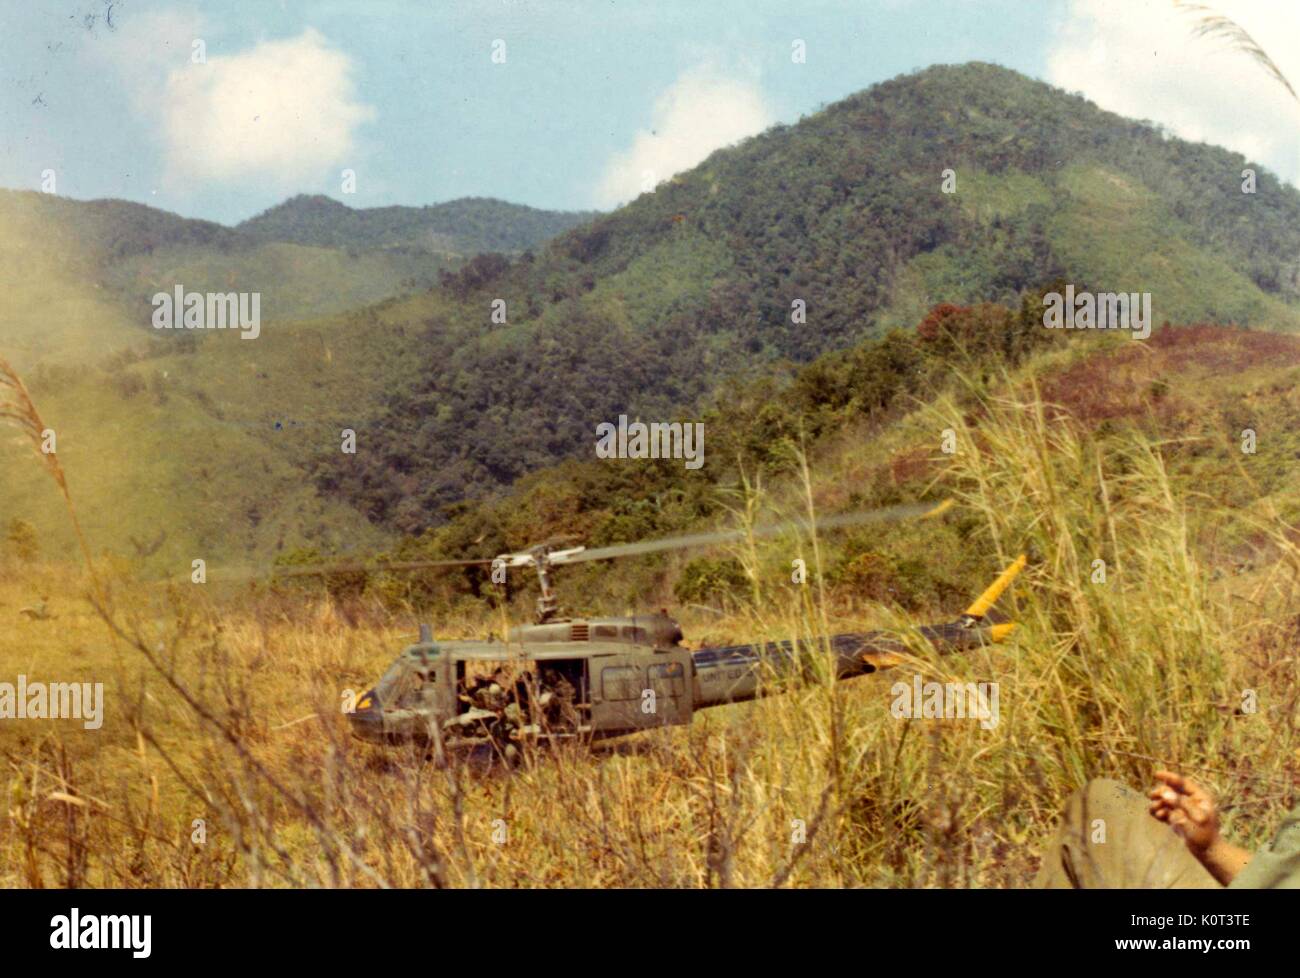 Huey Hubschrauber Landung in einem Feld in Vietnam während des Vietnam Krieges, Marines Aussteigen aus dem Hubschrauber, der Bein und Hand eines amerikanischen Soldaten im Vordergrund das Rauchen einer Zigarette, 1965 sichtbar. Stockfoto